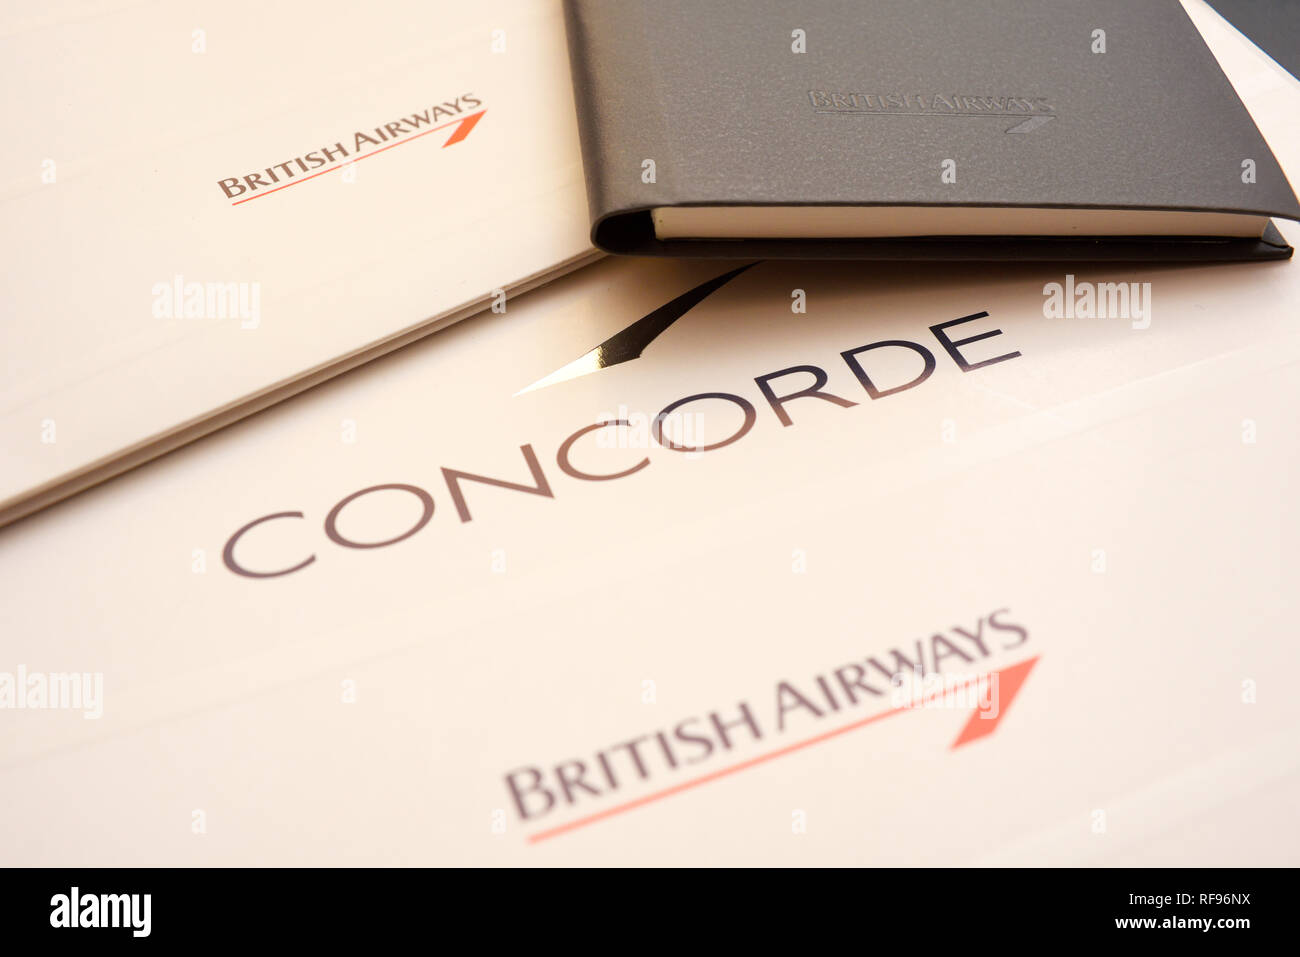 British Airways Concorde Jet Airliner Flugzeug souvenir Schreibwaren. Logo der Marke Sammlerstücke. Broschüre mit Marke. Momento Andenken von Supersonic Stockfoto